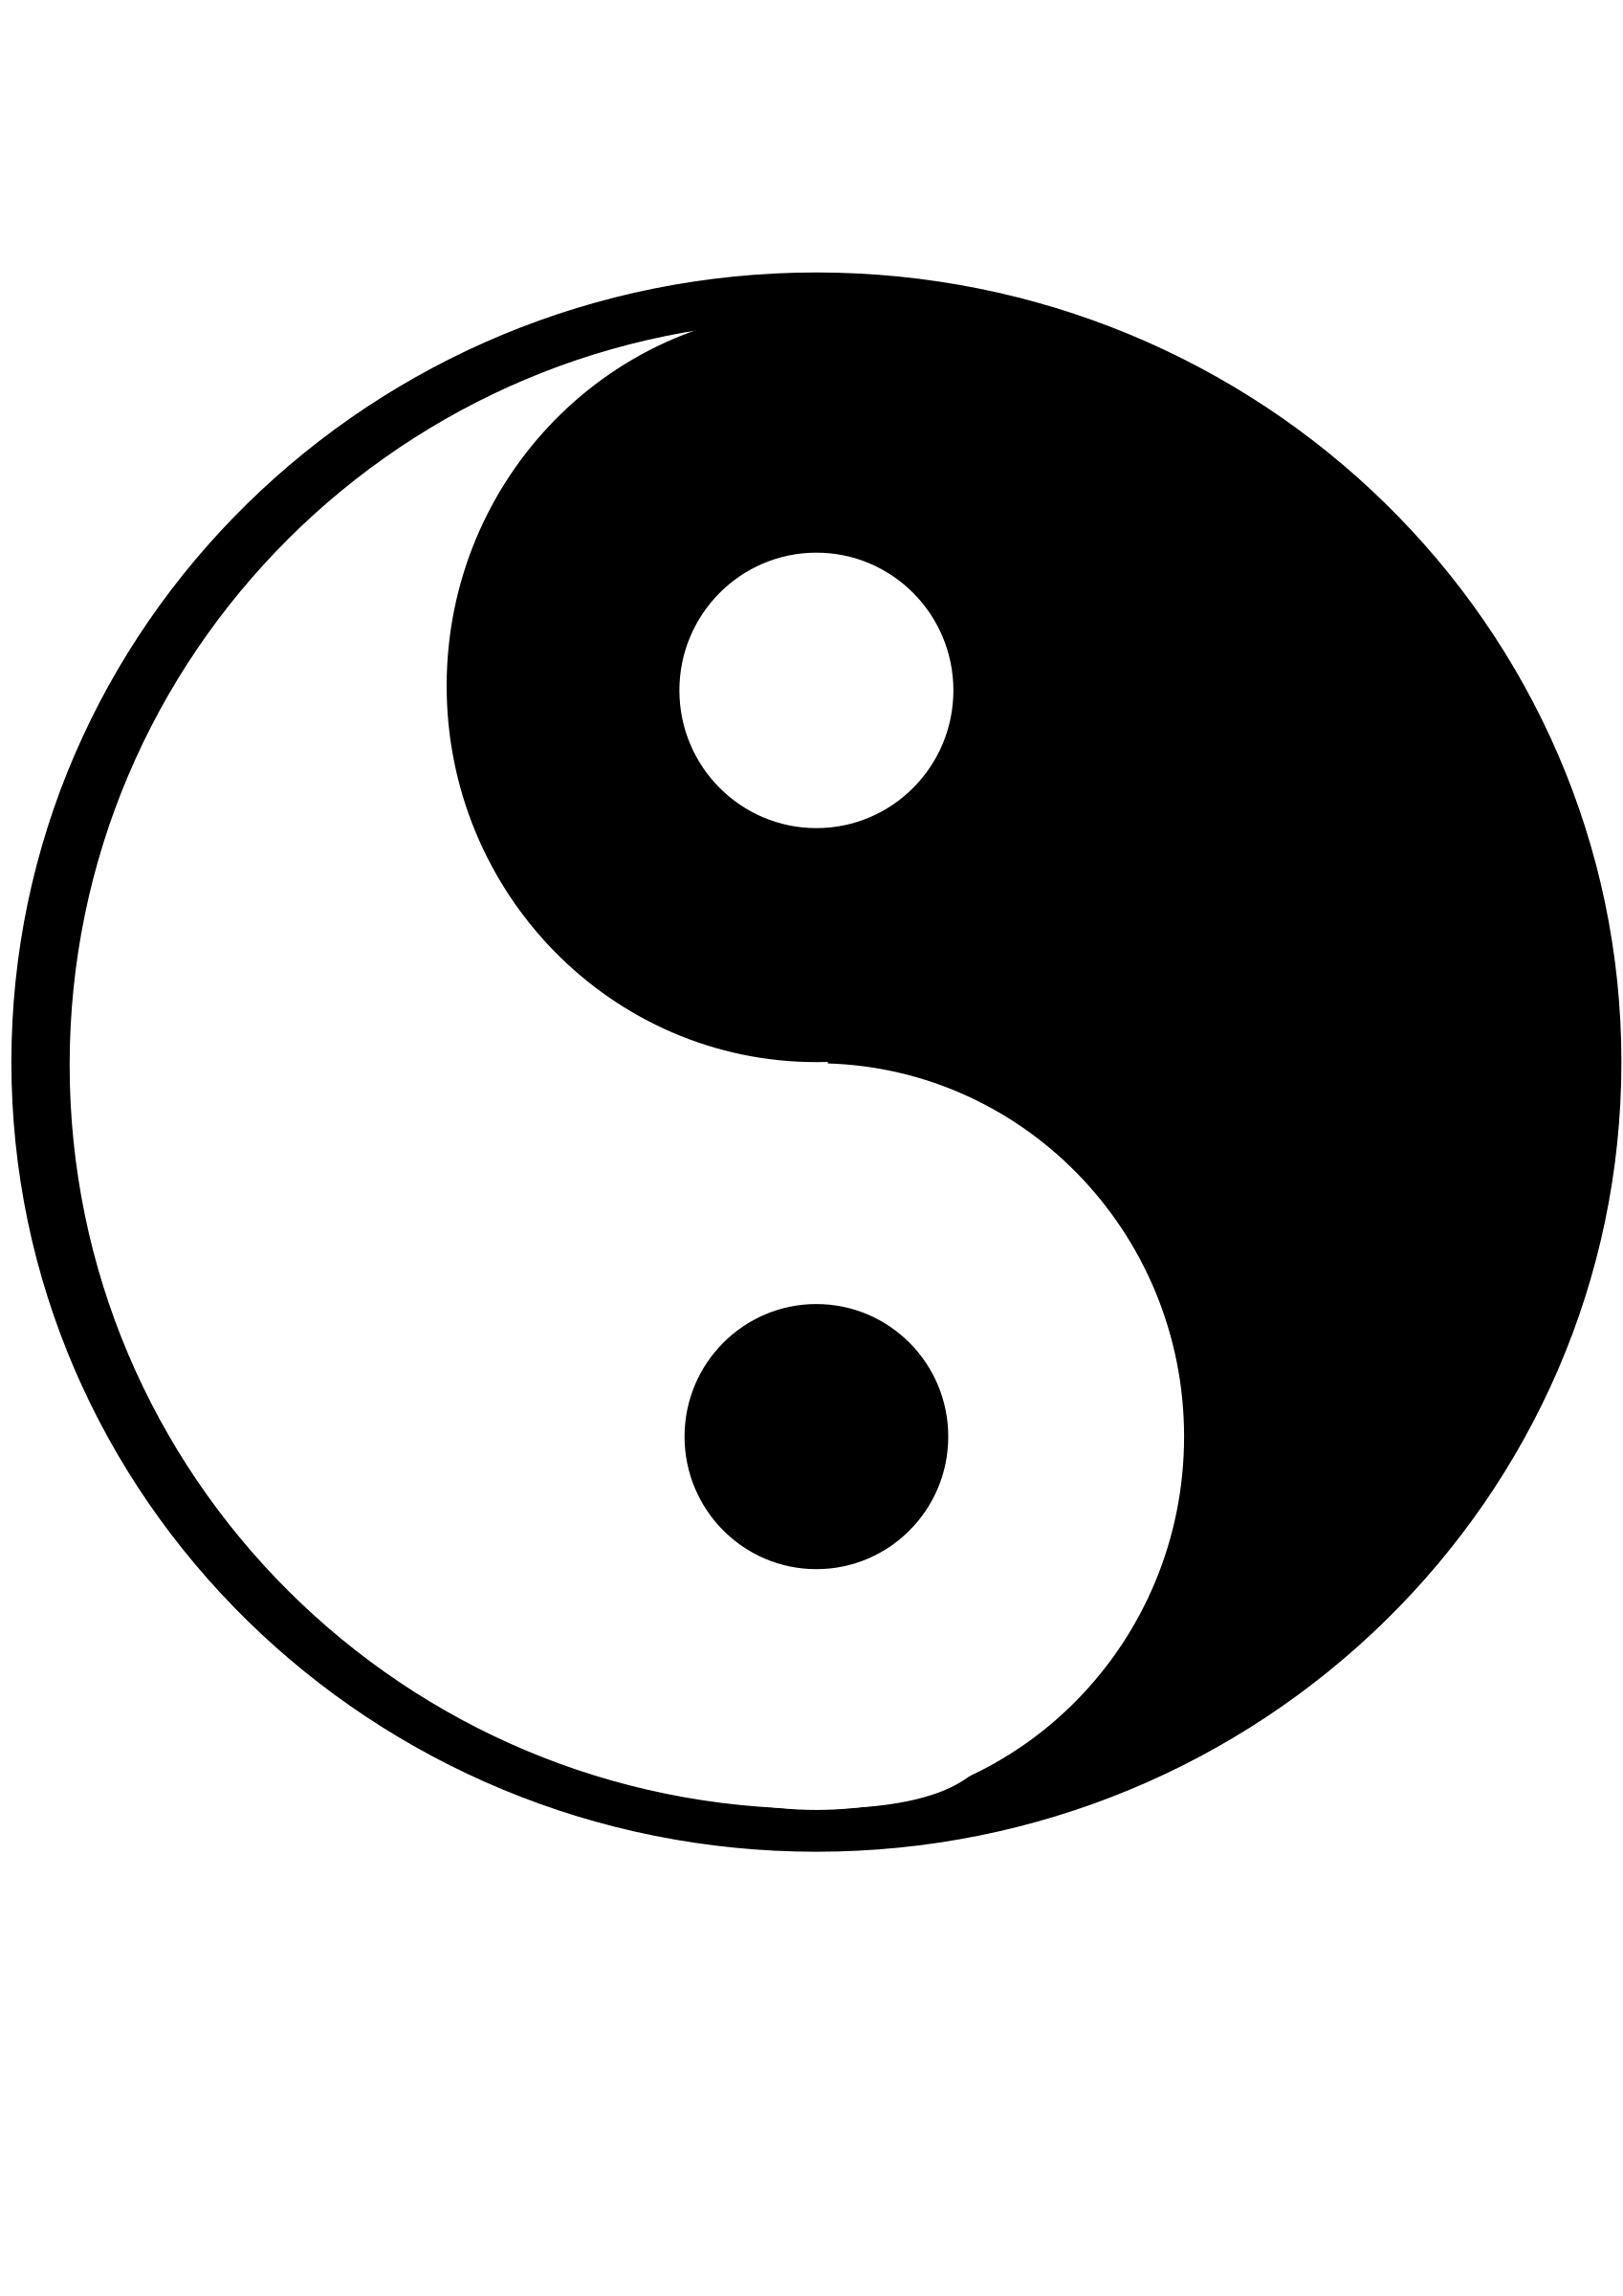 Yuan zhen 779 831), “ying ying’s story” by bethanie 